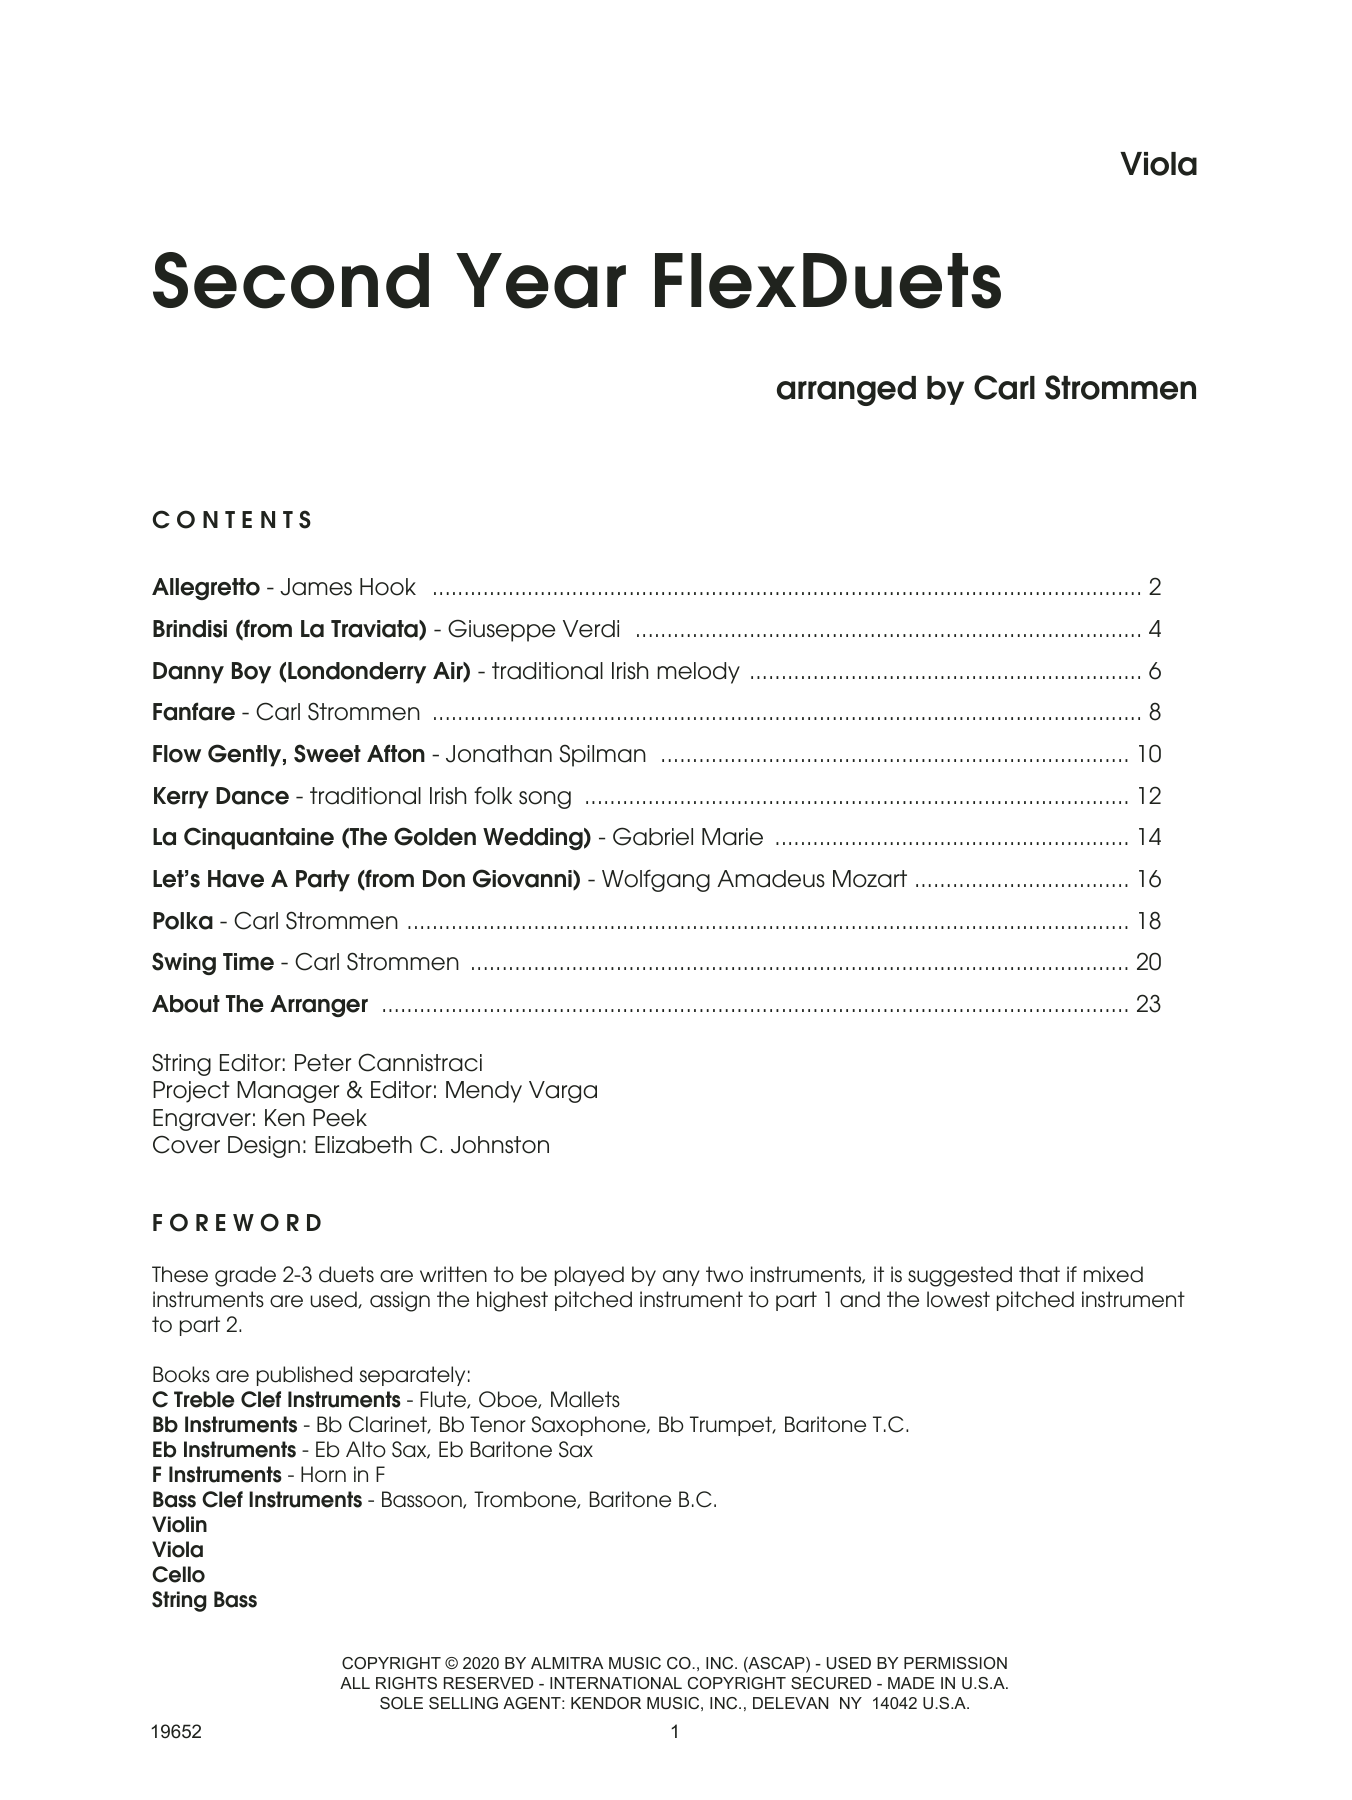 Second Year FlexDuets - Viola (String Ensemble) von Carl Strommen